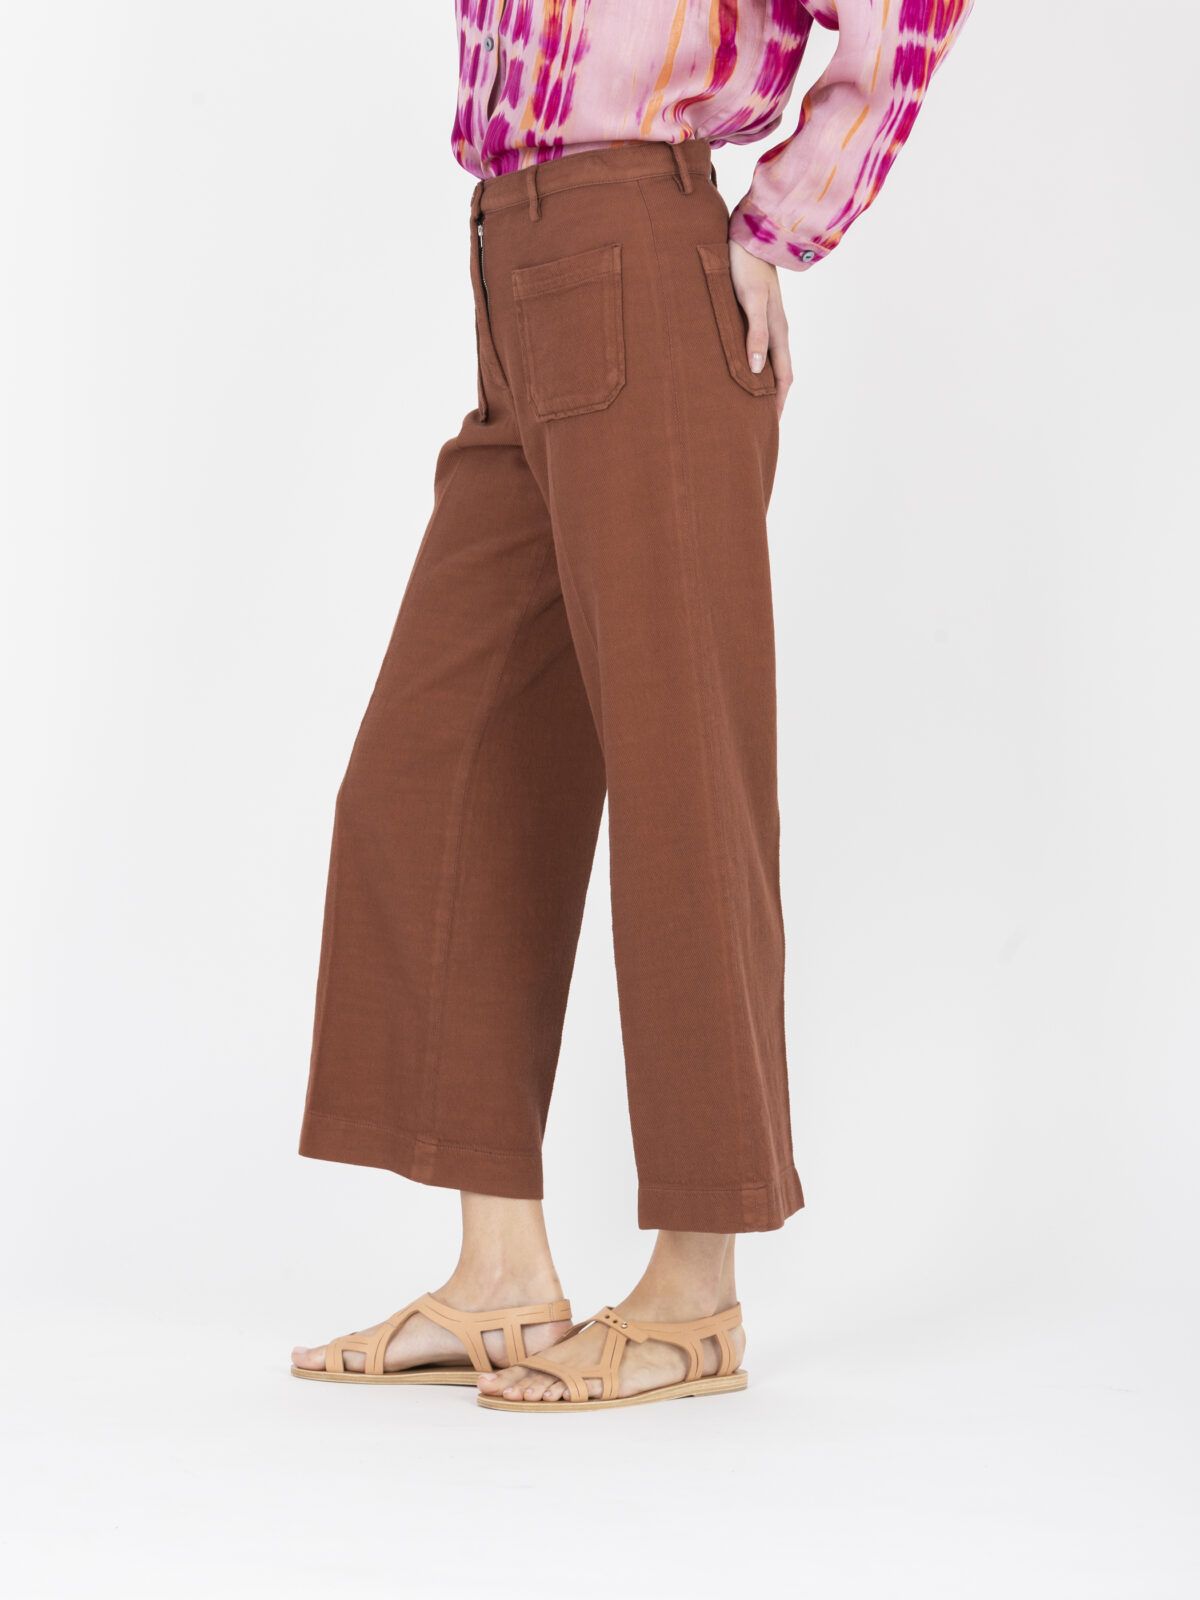 hendrick-cotton-rust-pants-high-waist-crop-pockets-sessun-matchboxathens